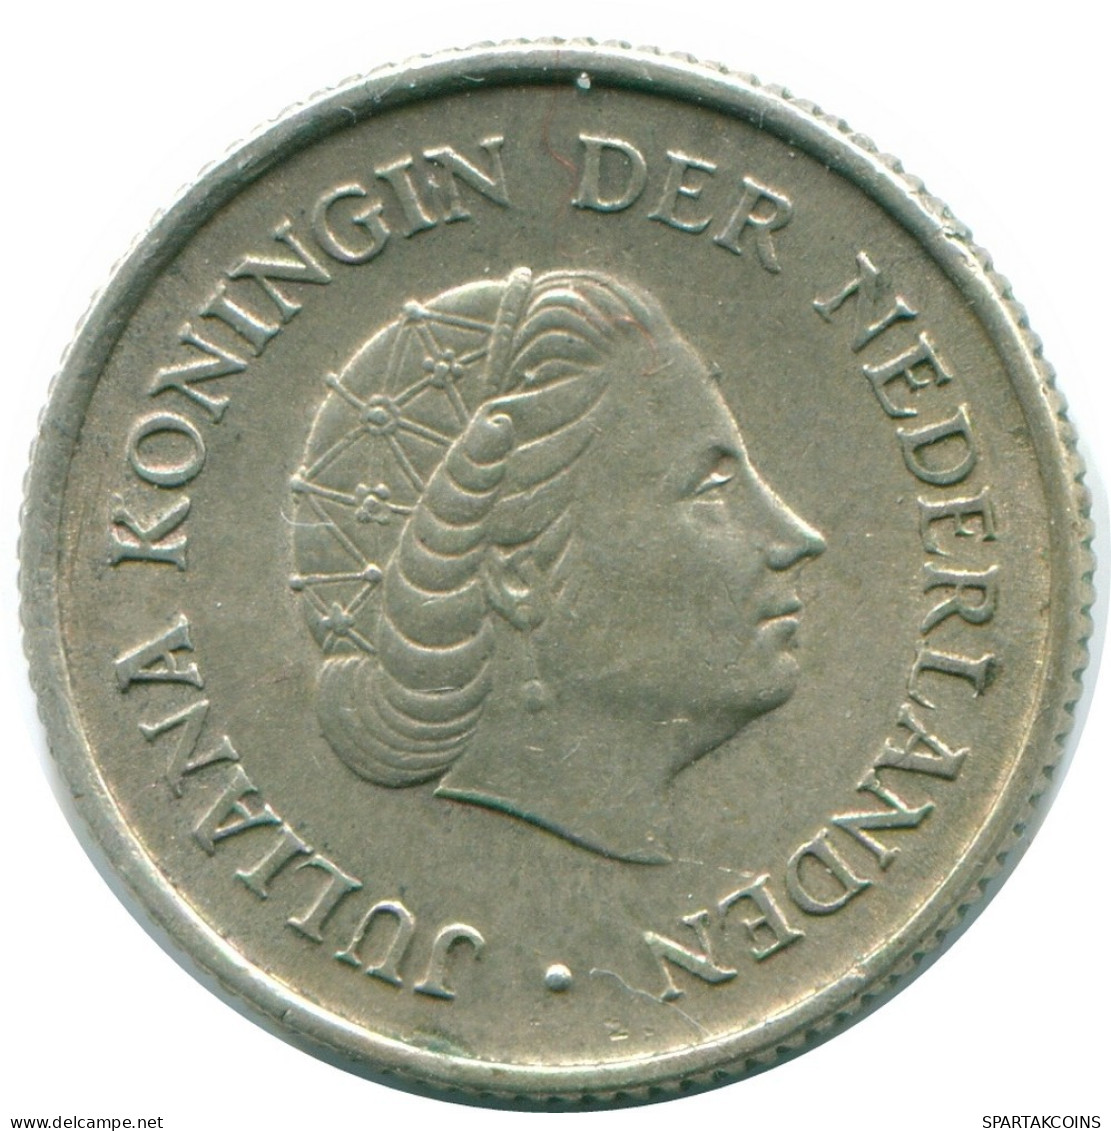 1/4 GULDEN 1965 NIEDERLÄNDISCHE ANTILLEN SILBER Koloniale Münze #NL11422.4.D.A - Antillas Neerlandesas